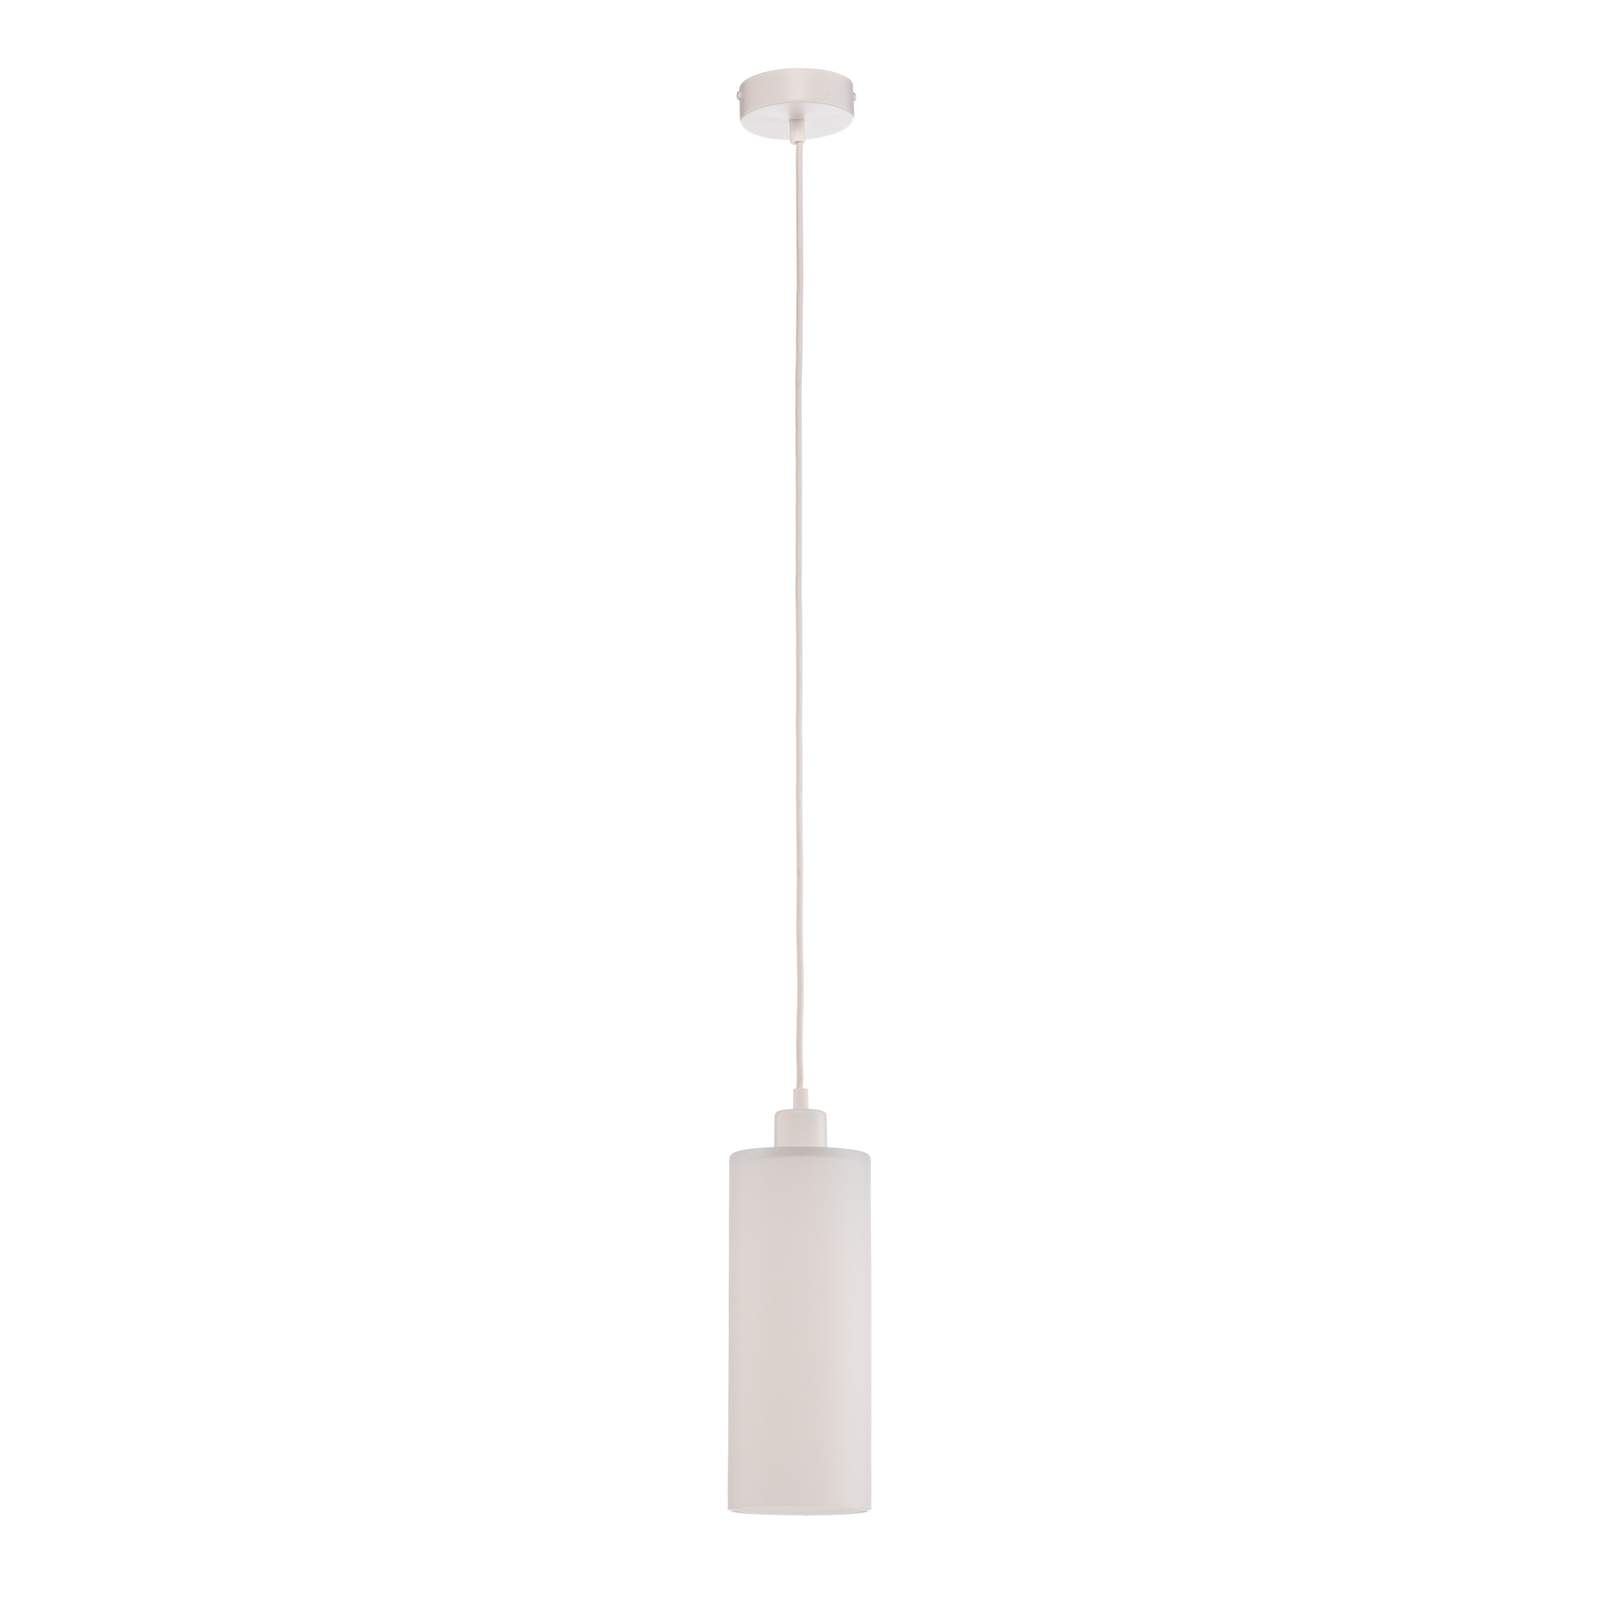 Soda hanglamp met witte glazen cilinder Ø 12cm